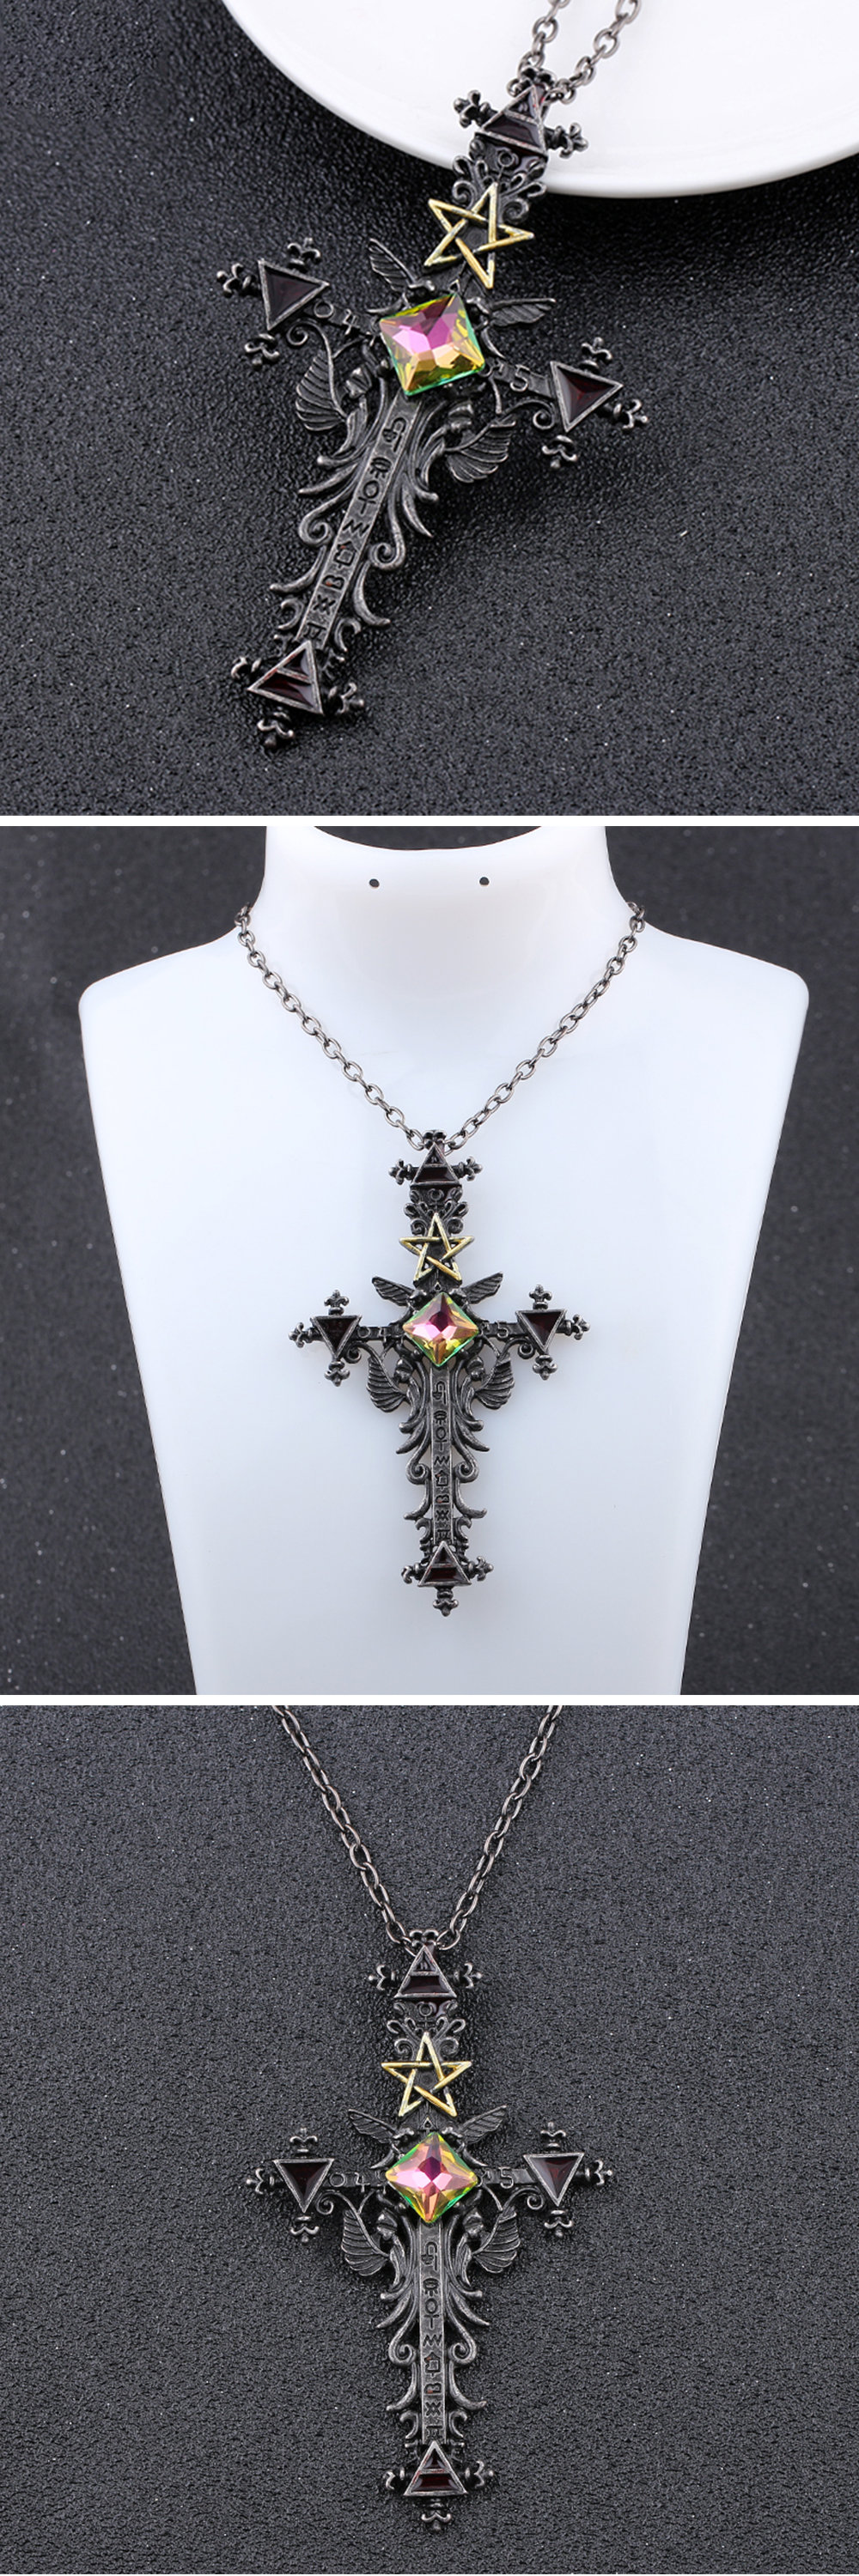 Gothic Cross Necklace - ApolloBox